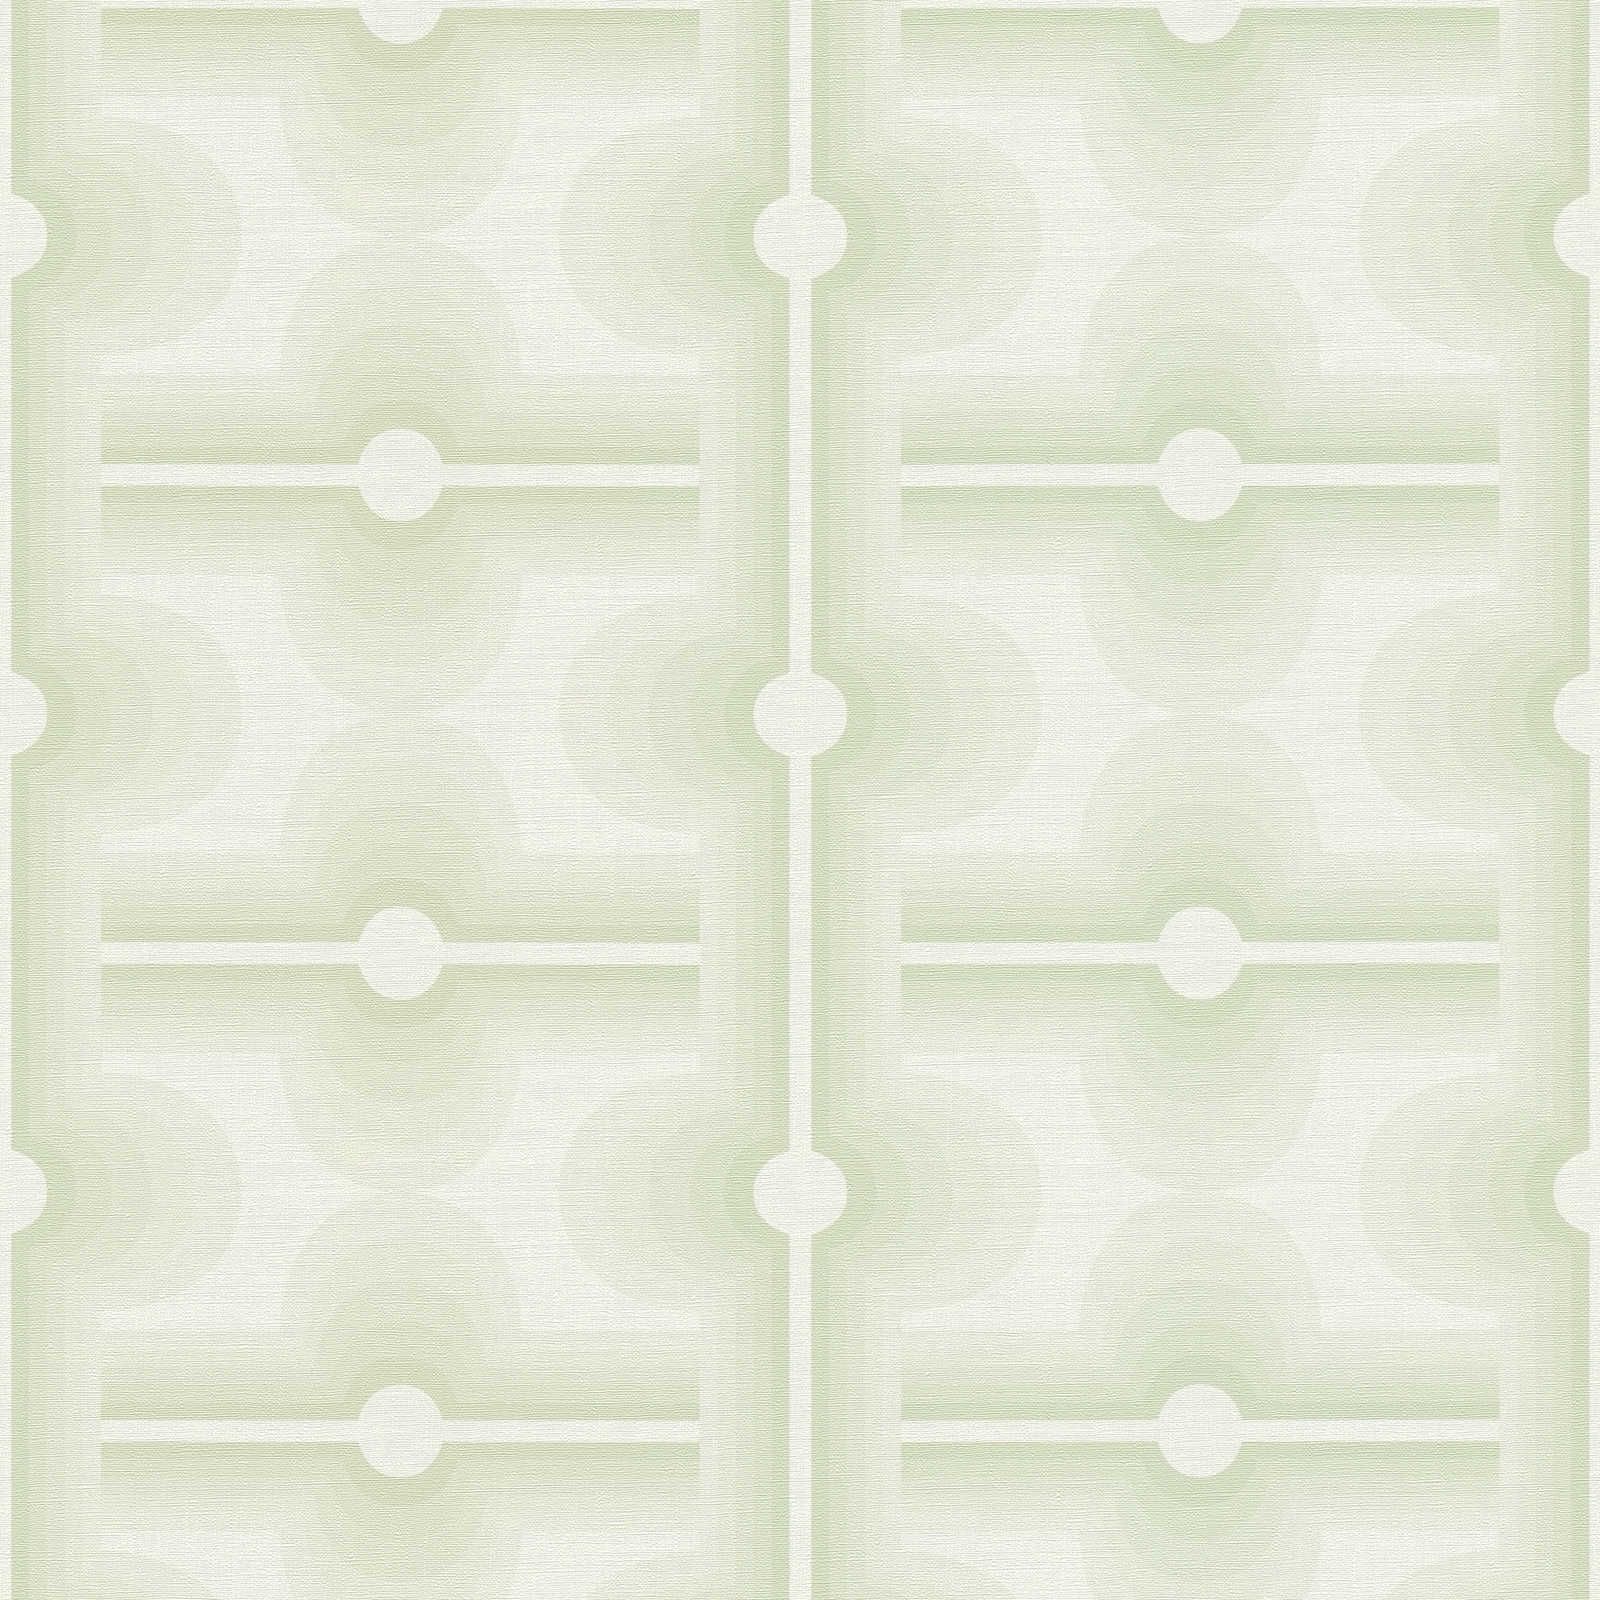 Retropatroon op vliesbehang in lichtgroen - groen, crème
